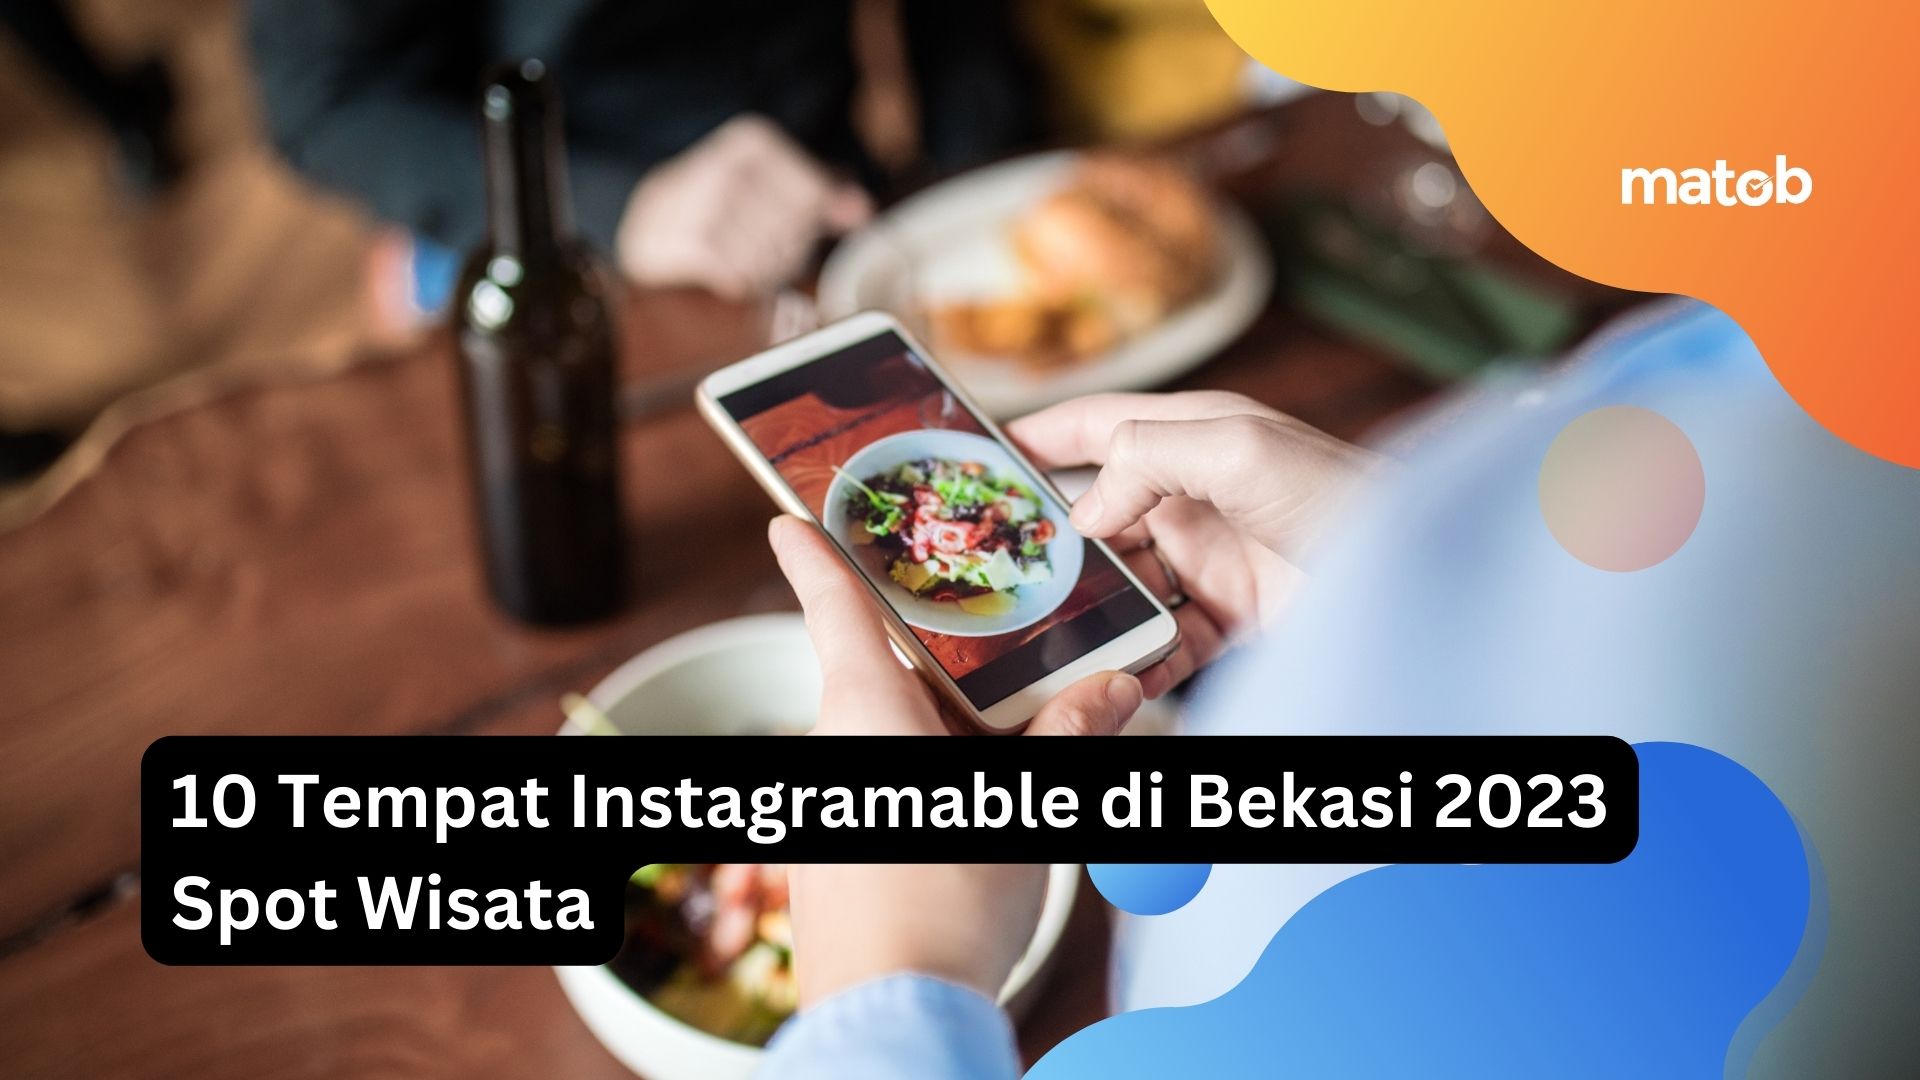 10 Tempat Instagramable di Bekasi 2023 Spot Wisata